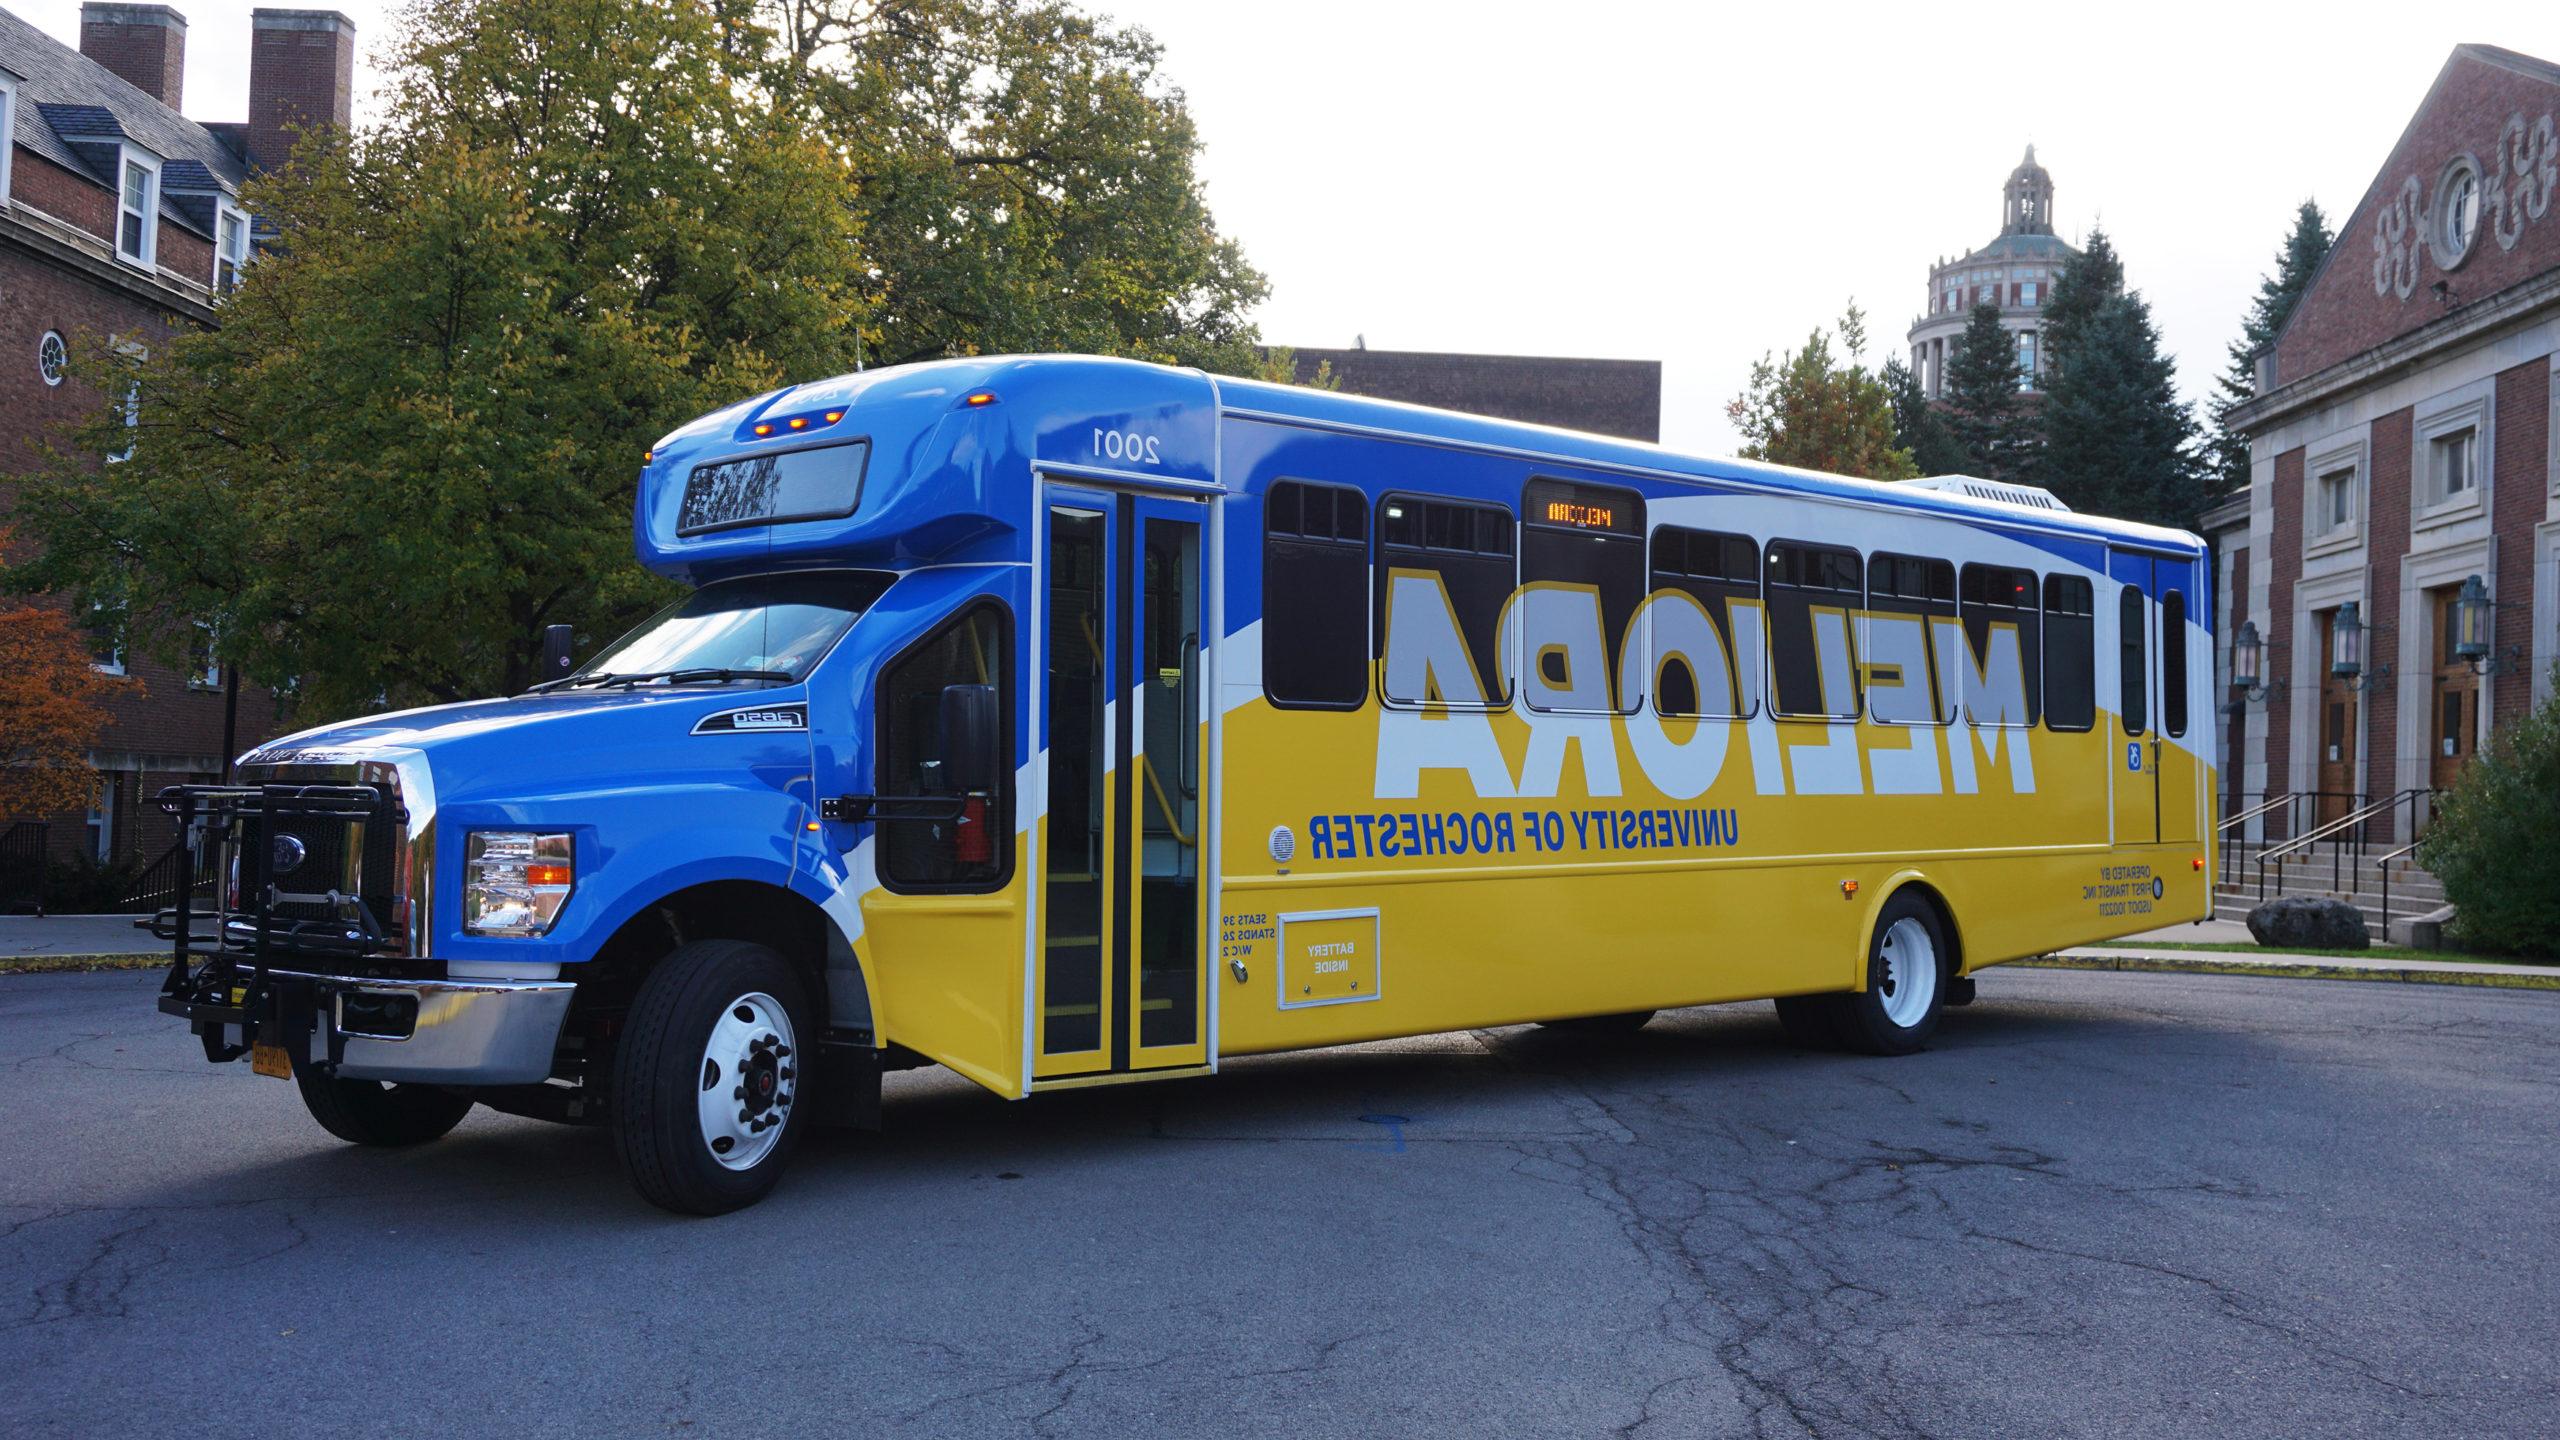 十大赌博正规老平台 shuttle bus with new blue and yellow wrap